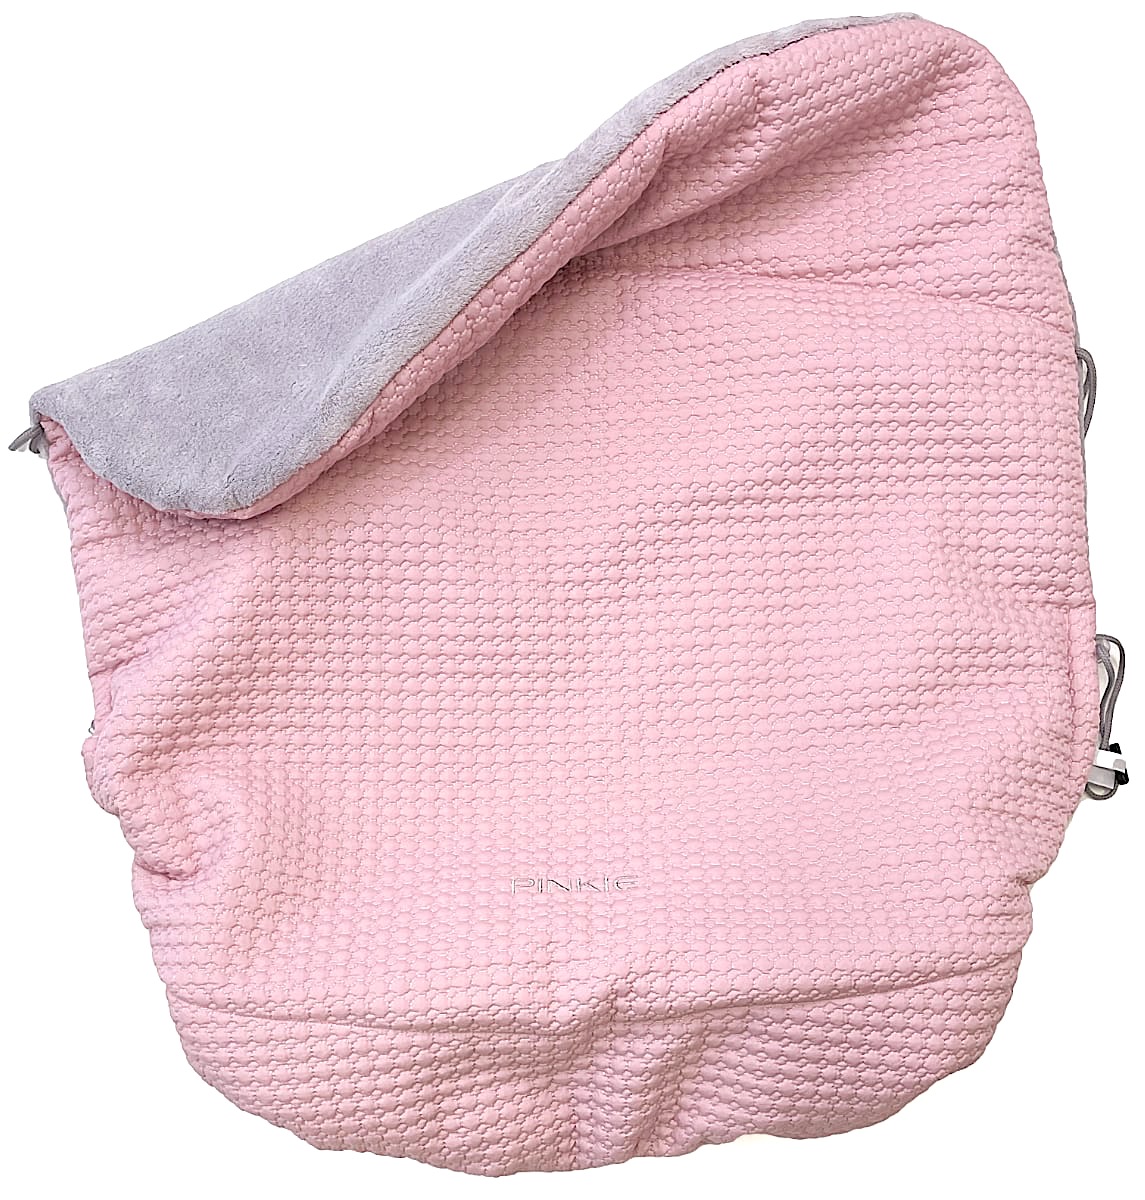 zateplená stahovací deka Small Pink Comb 4201